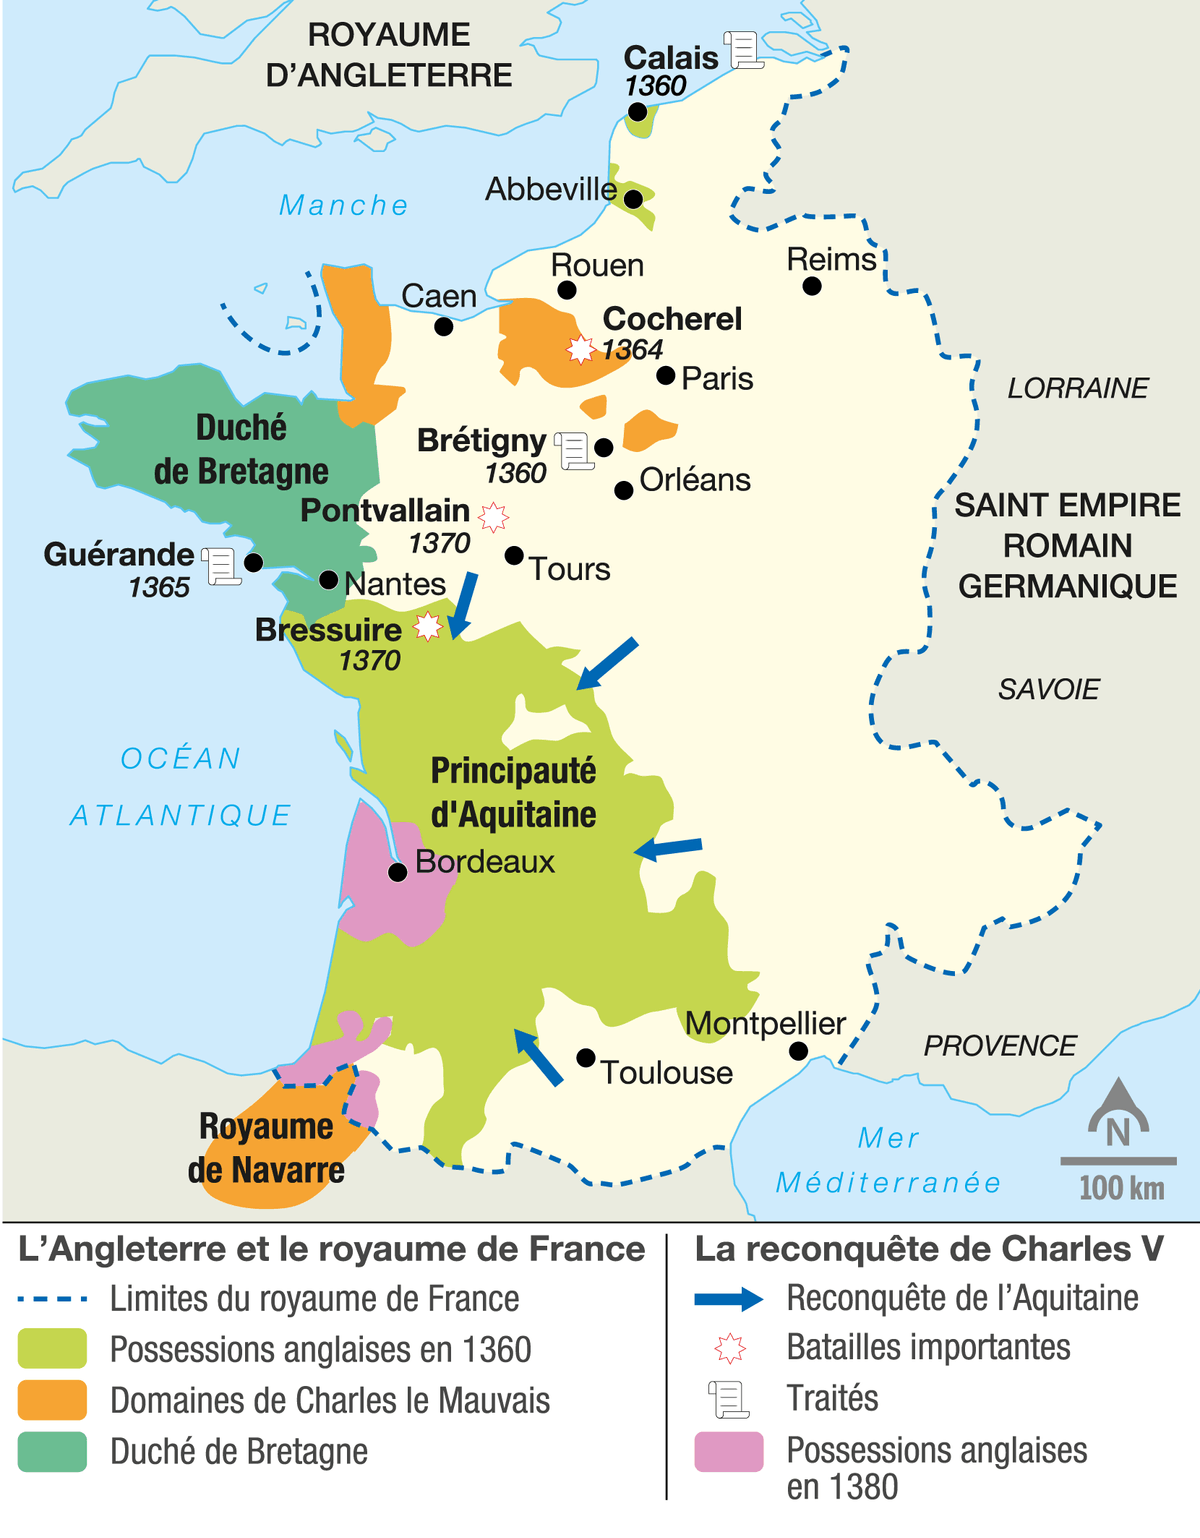 La reconquête du royaume de France par Charles V